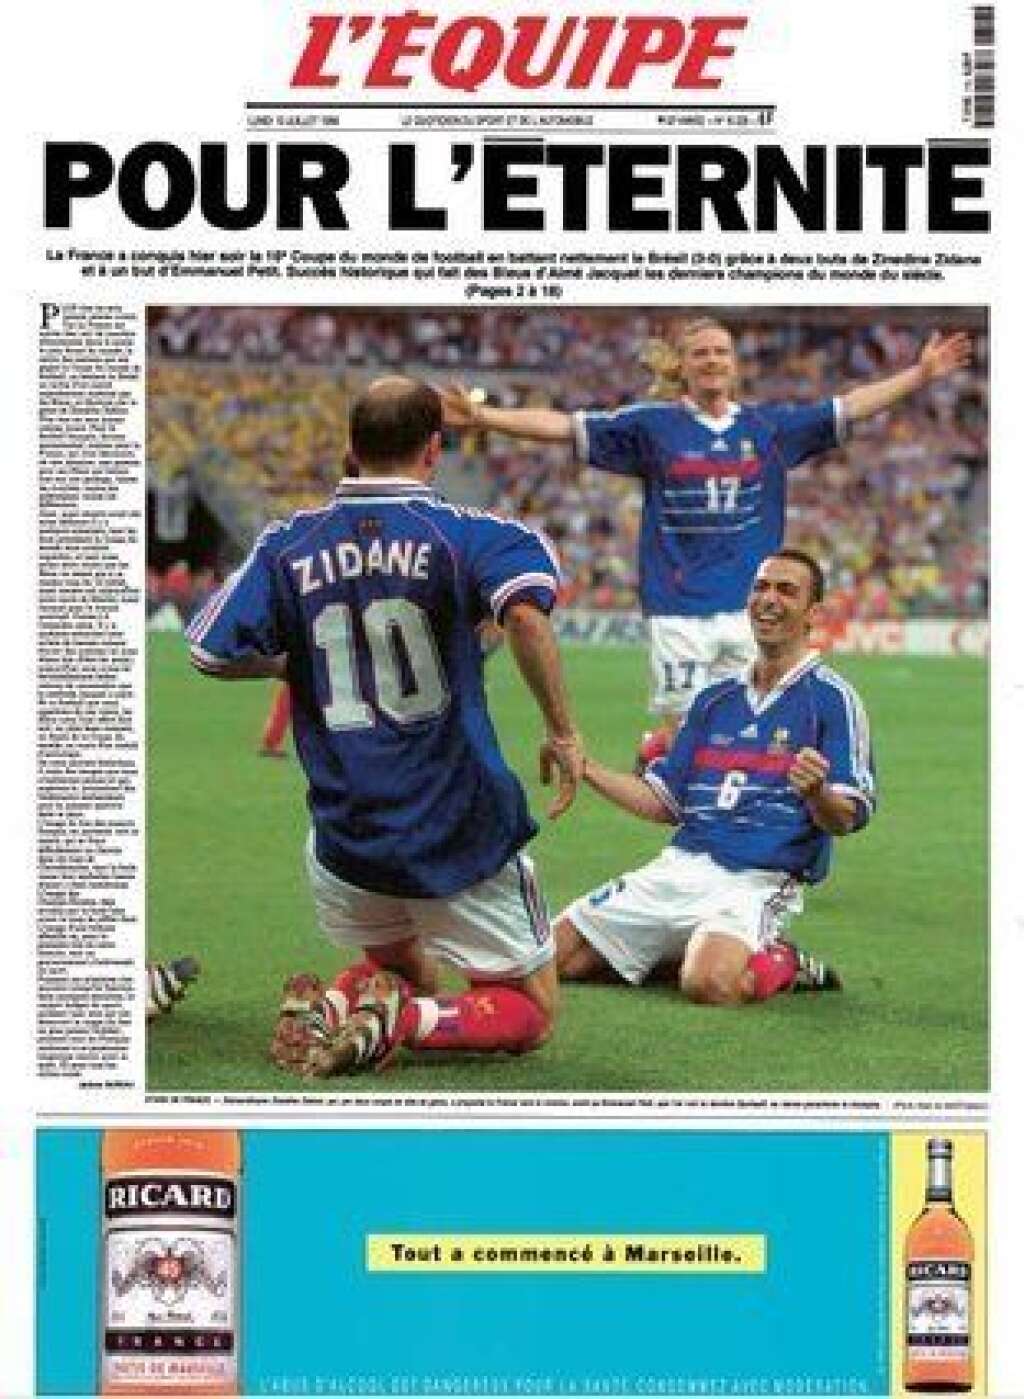 L'Equipe (13/07/98) - 1,96 million pour la victoire de l'équipe de France en Coupe du monde.